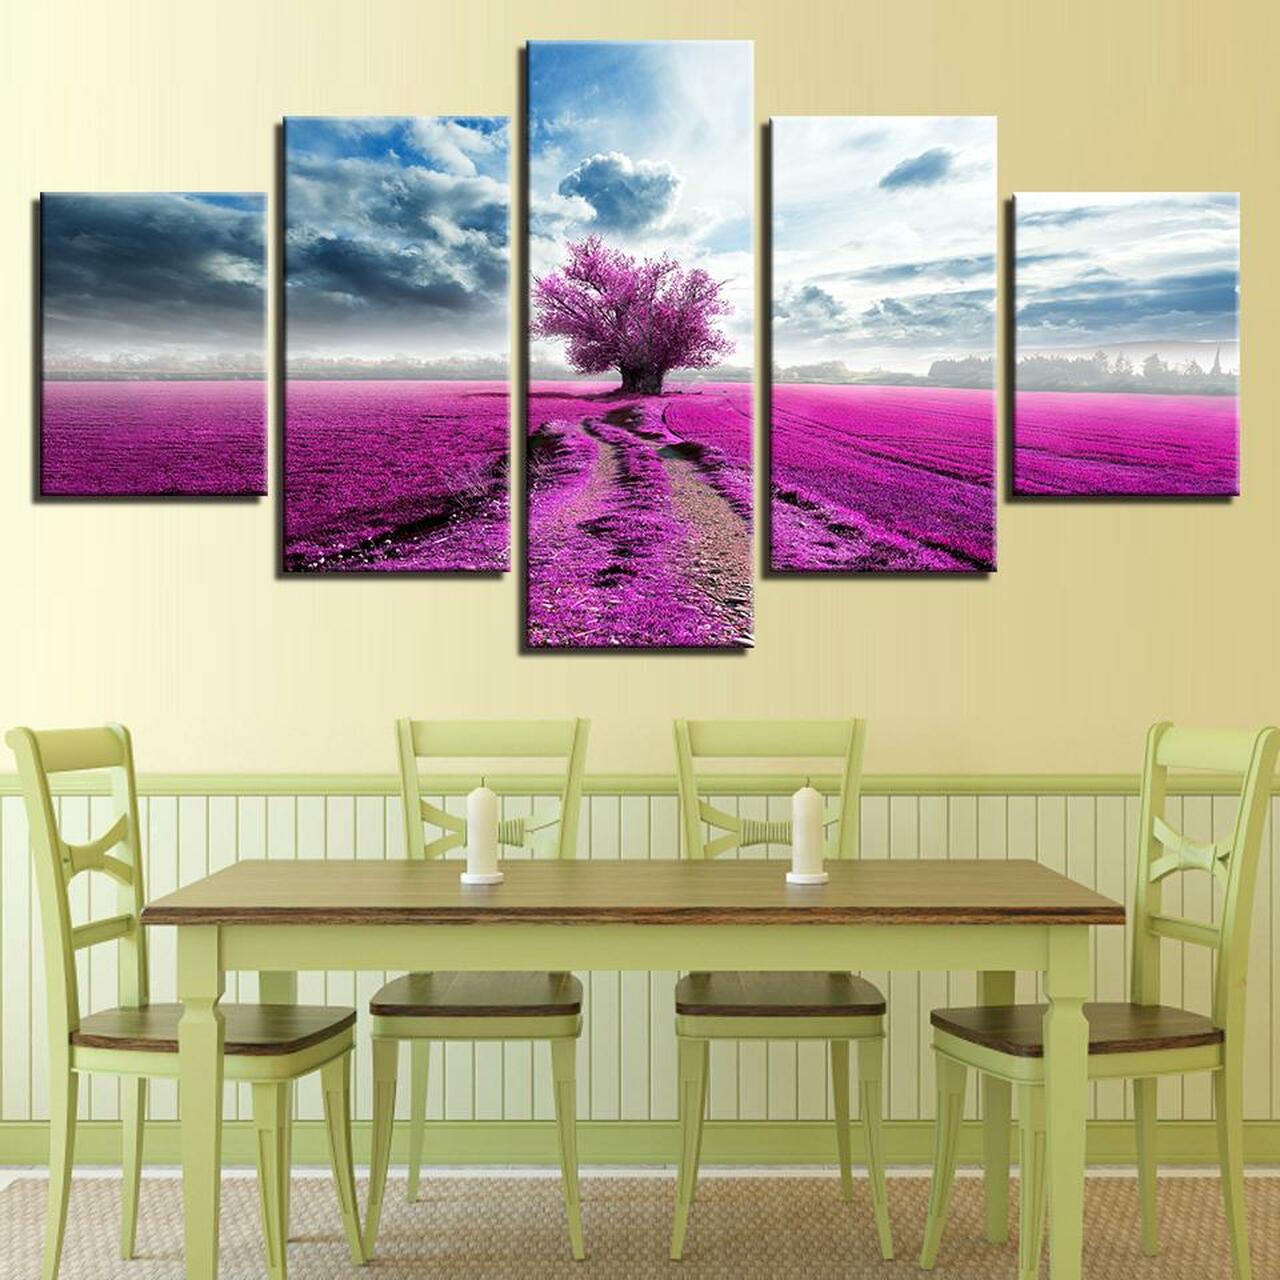 purple tree 5 pices peinture sur toile impression sur toile toile art pour la dcoration intrieureg8iy3